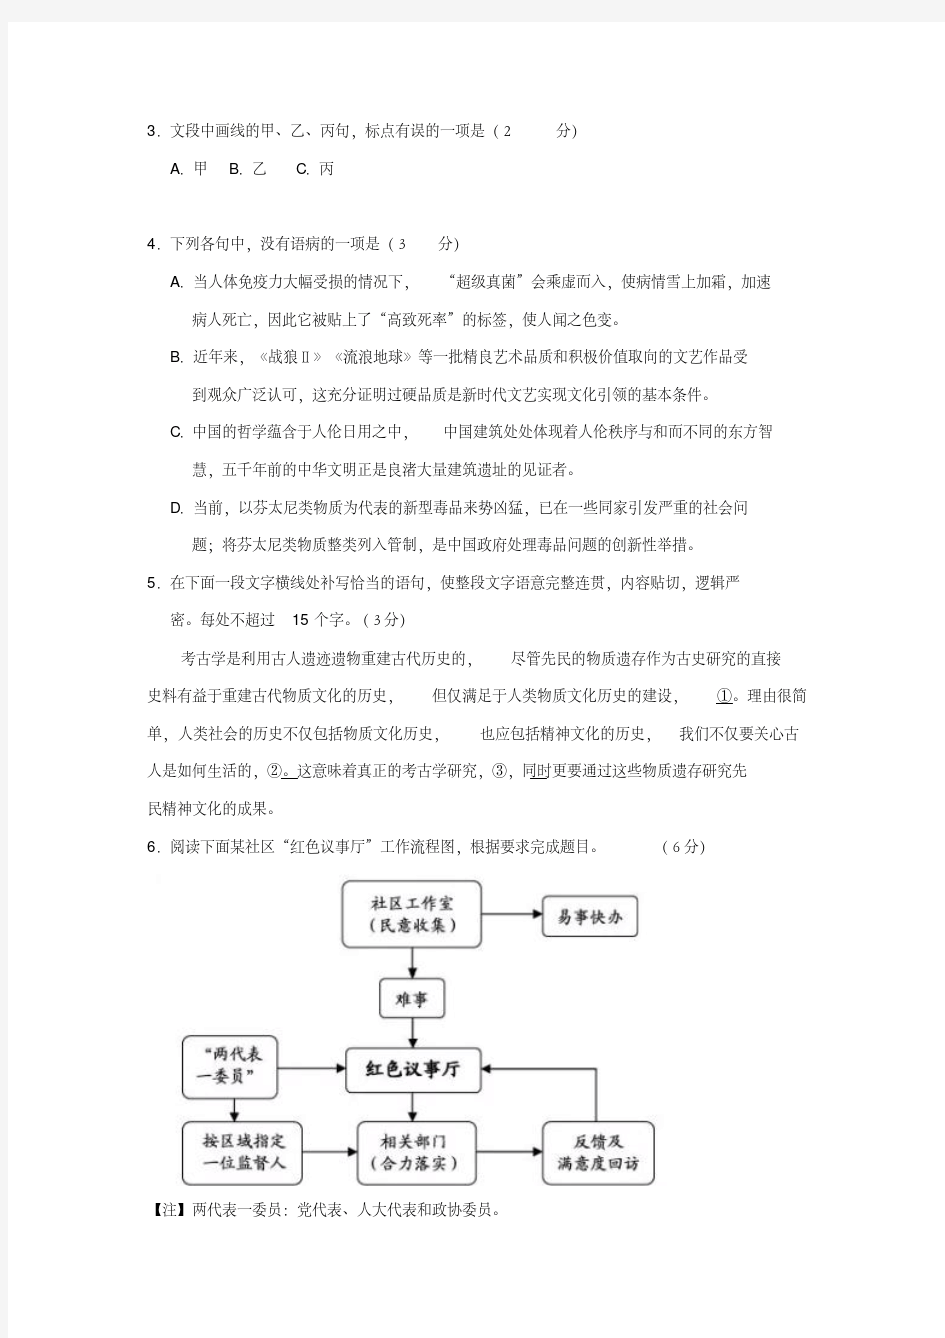 2019年浙江高考语文试题及答案.pdf